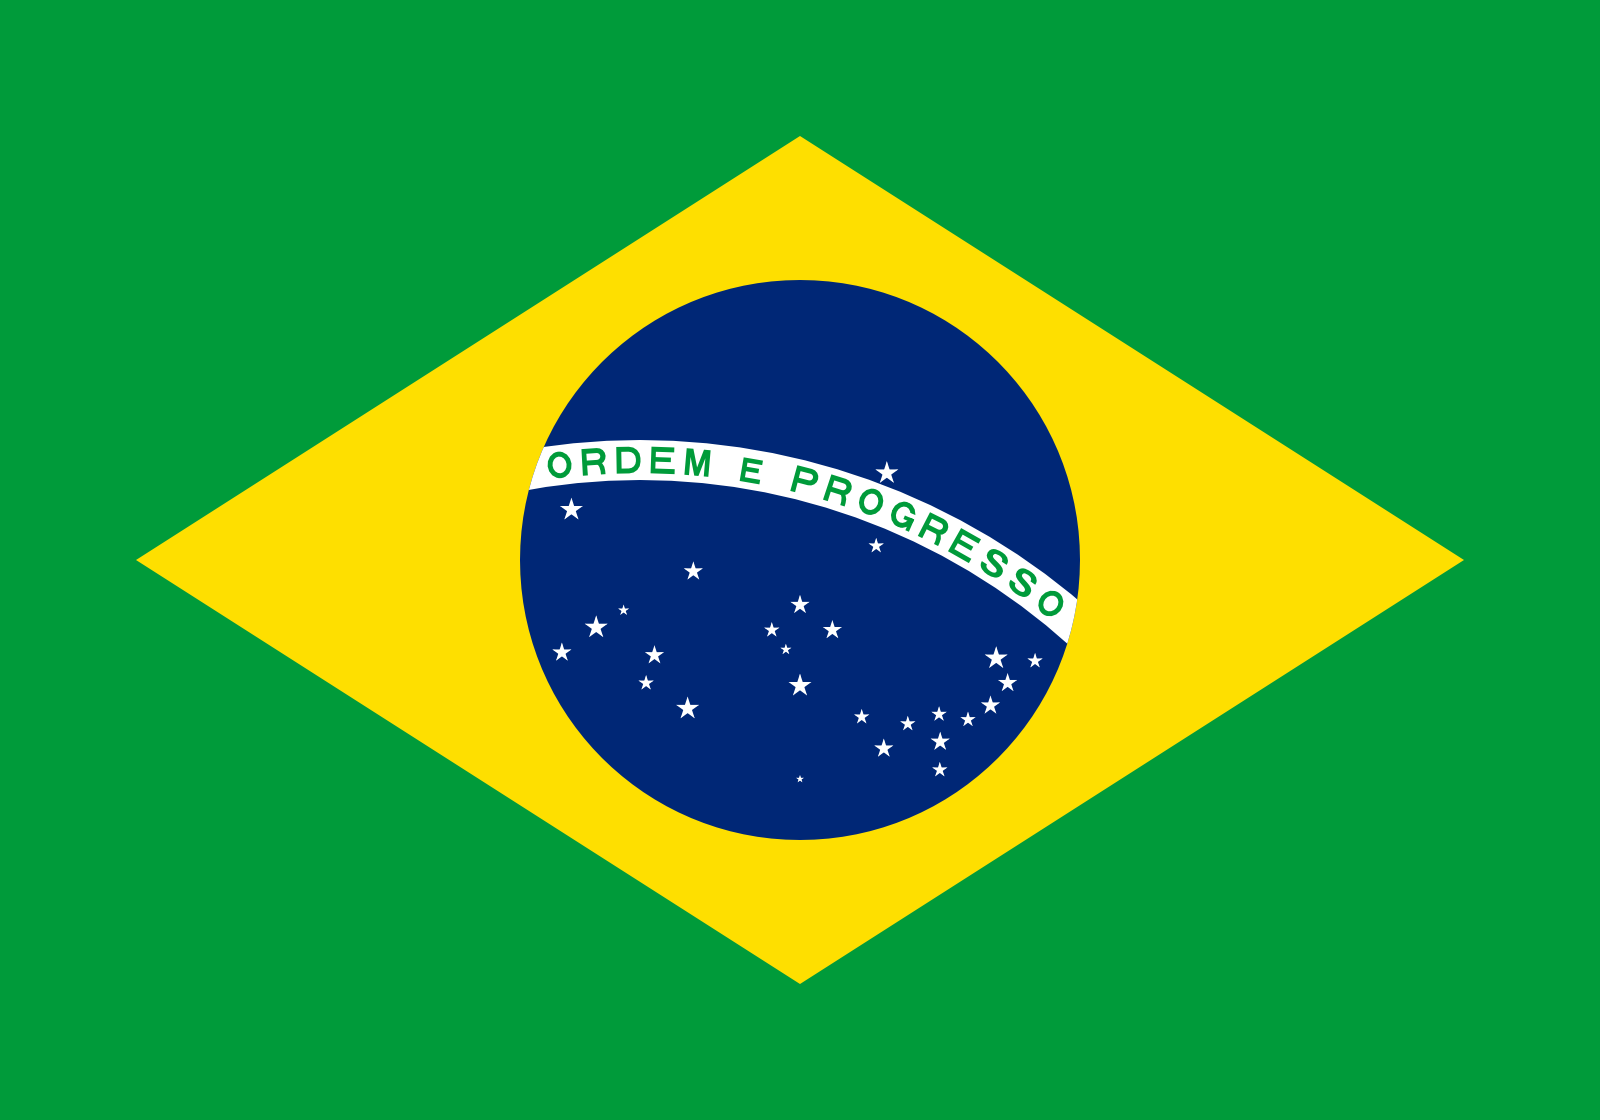 Bild der Staatsflagge Brasilien - mit einer Auflösung von 1600x1120 - Südamerika